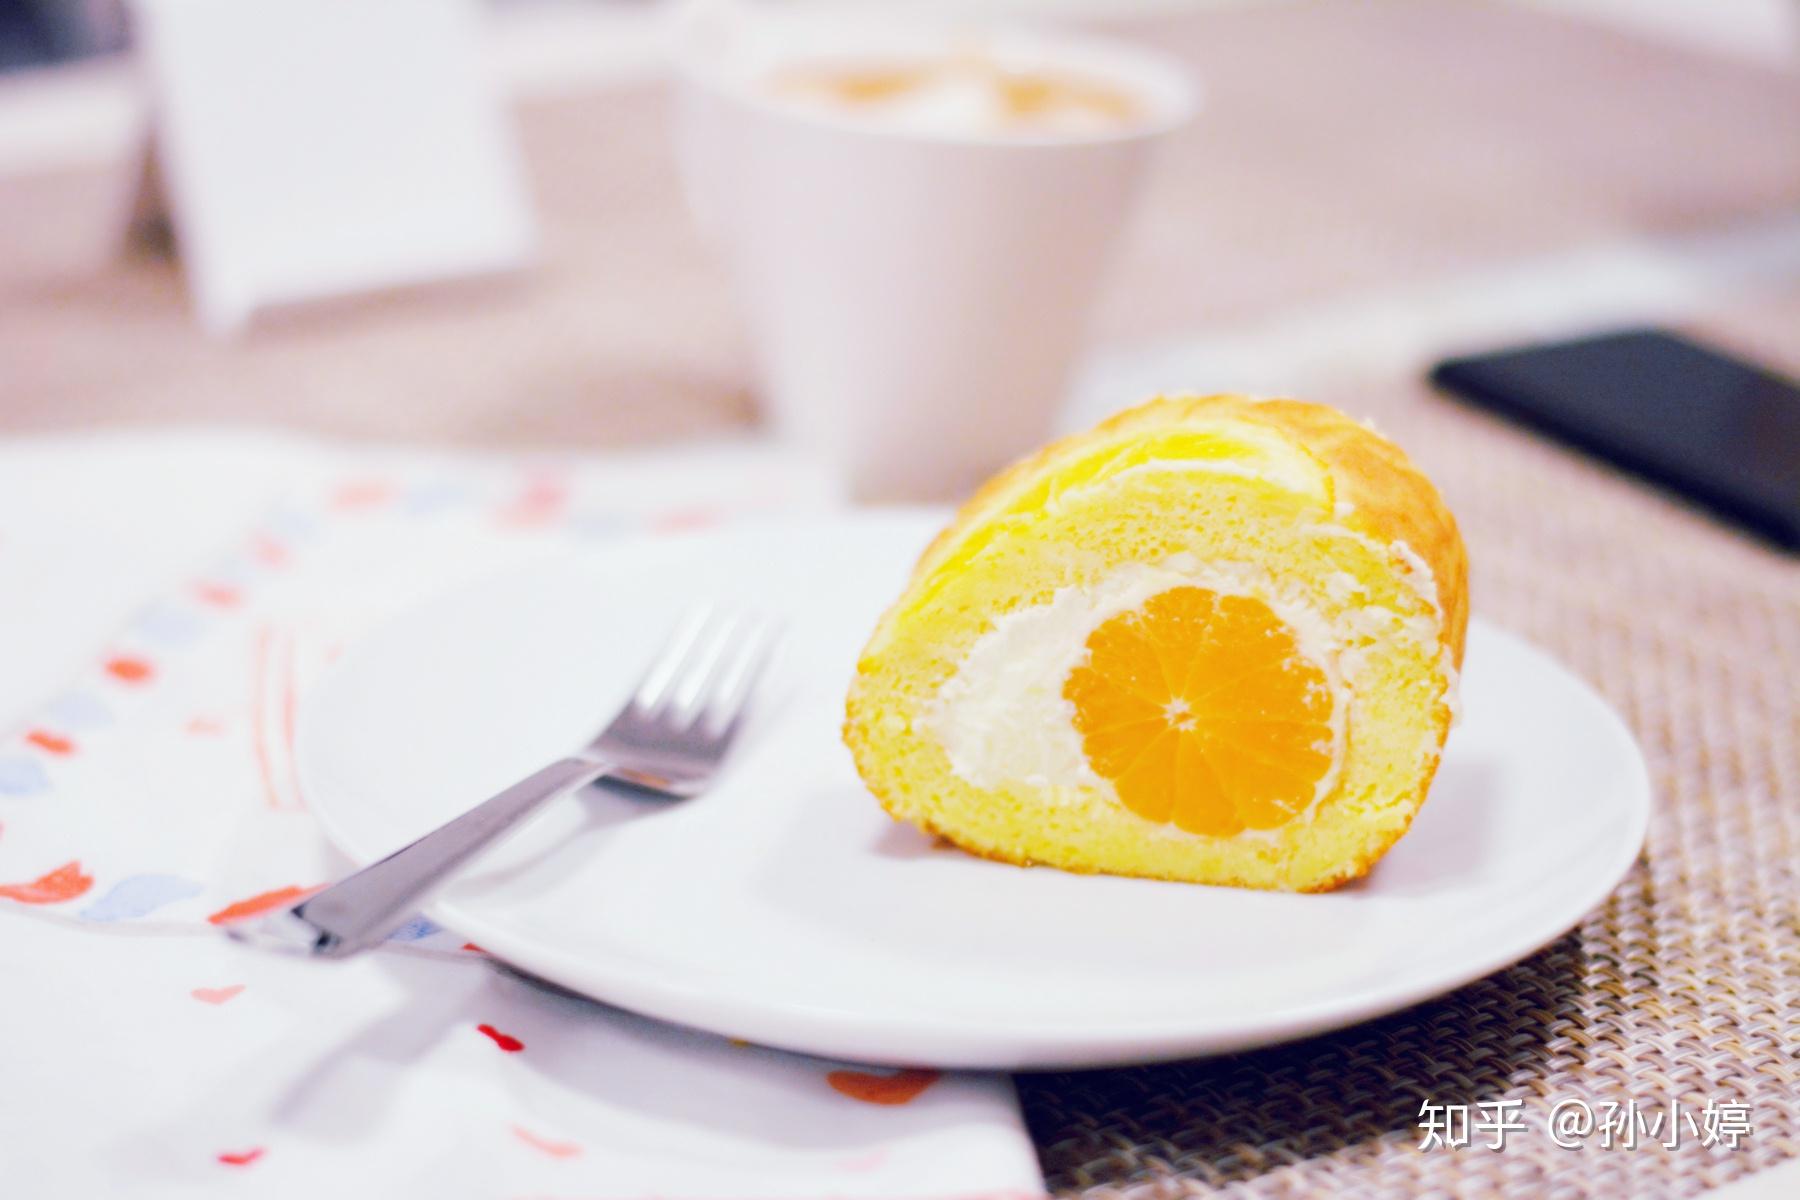 爱厨房的幸福之味: 鲜橙棉花蛋糕 Orange Cotton Cake